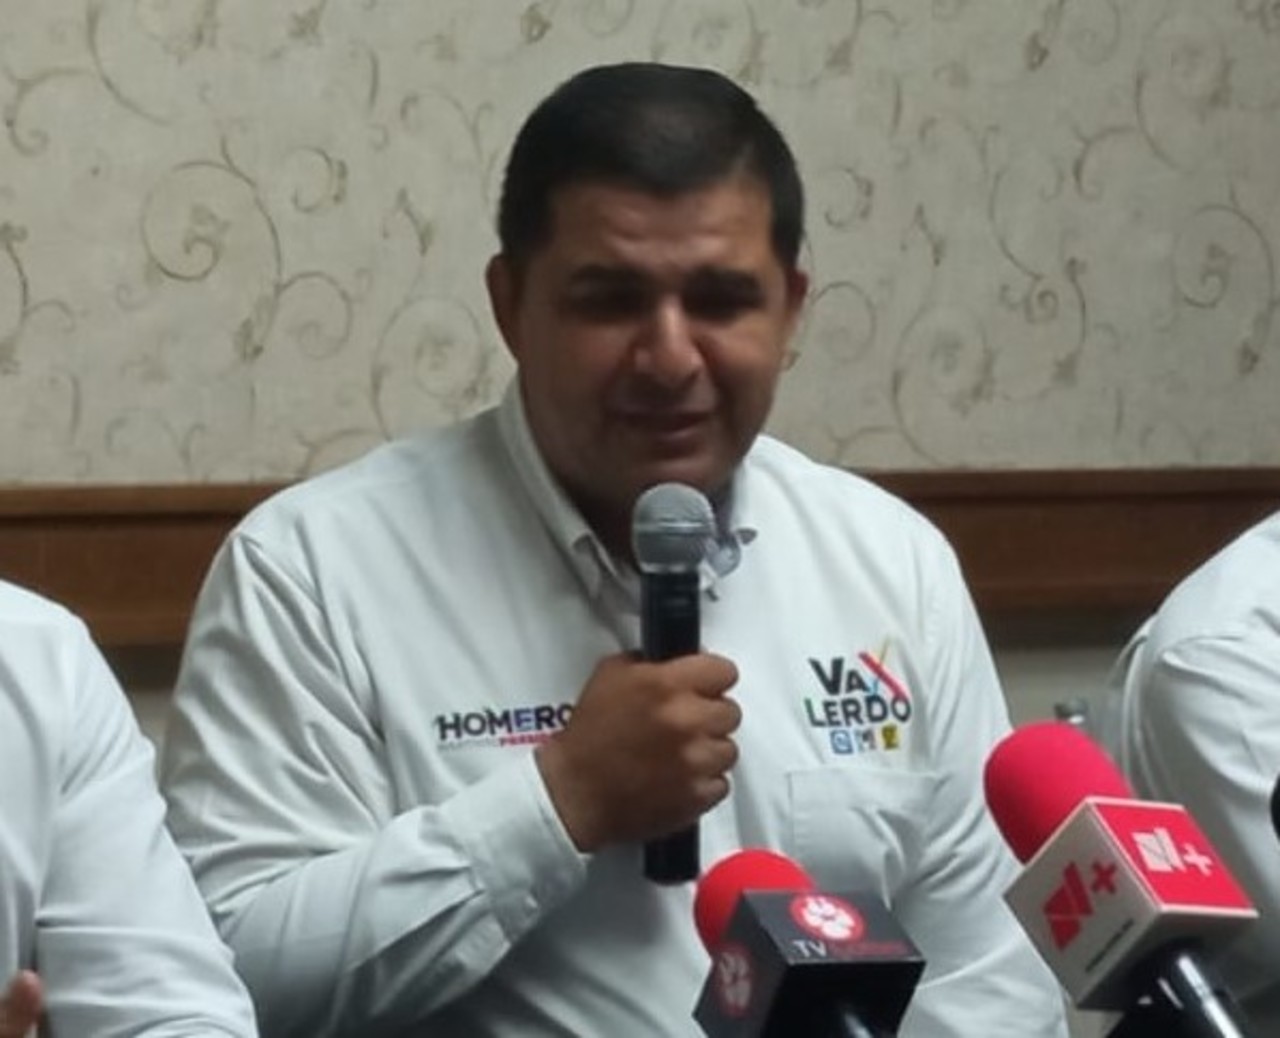 Cuestiona el candidato Homero Martínez en dónde quedó el apoyo federal para los municipios.